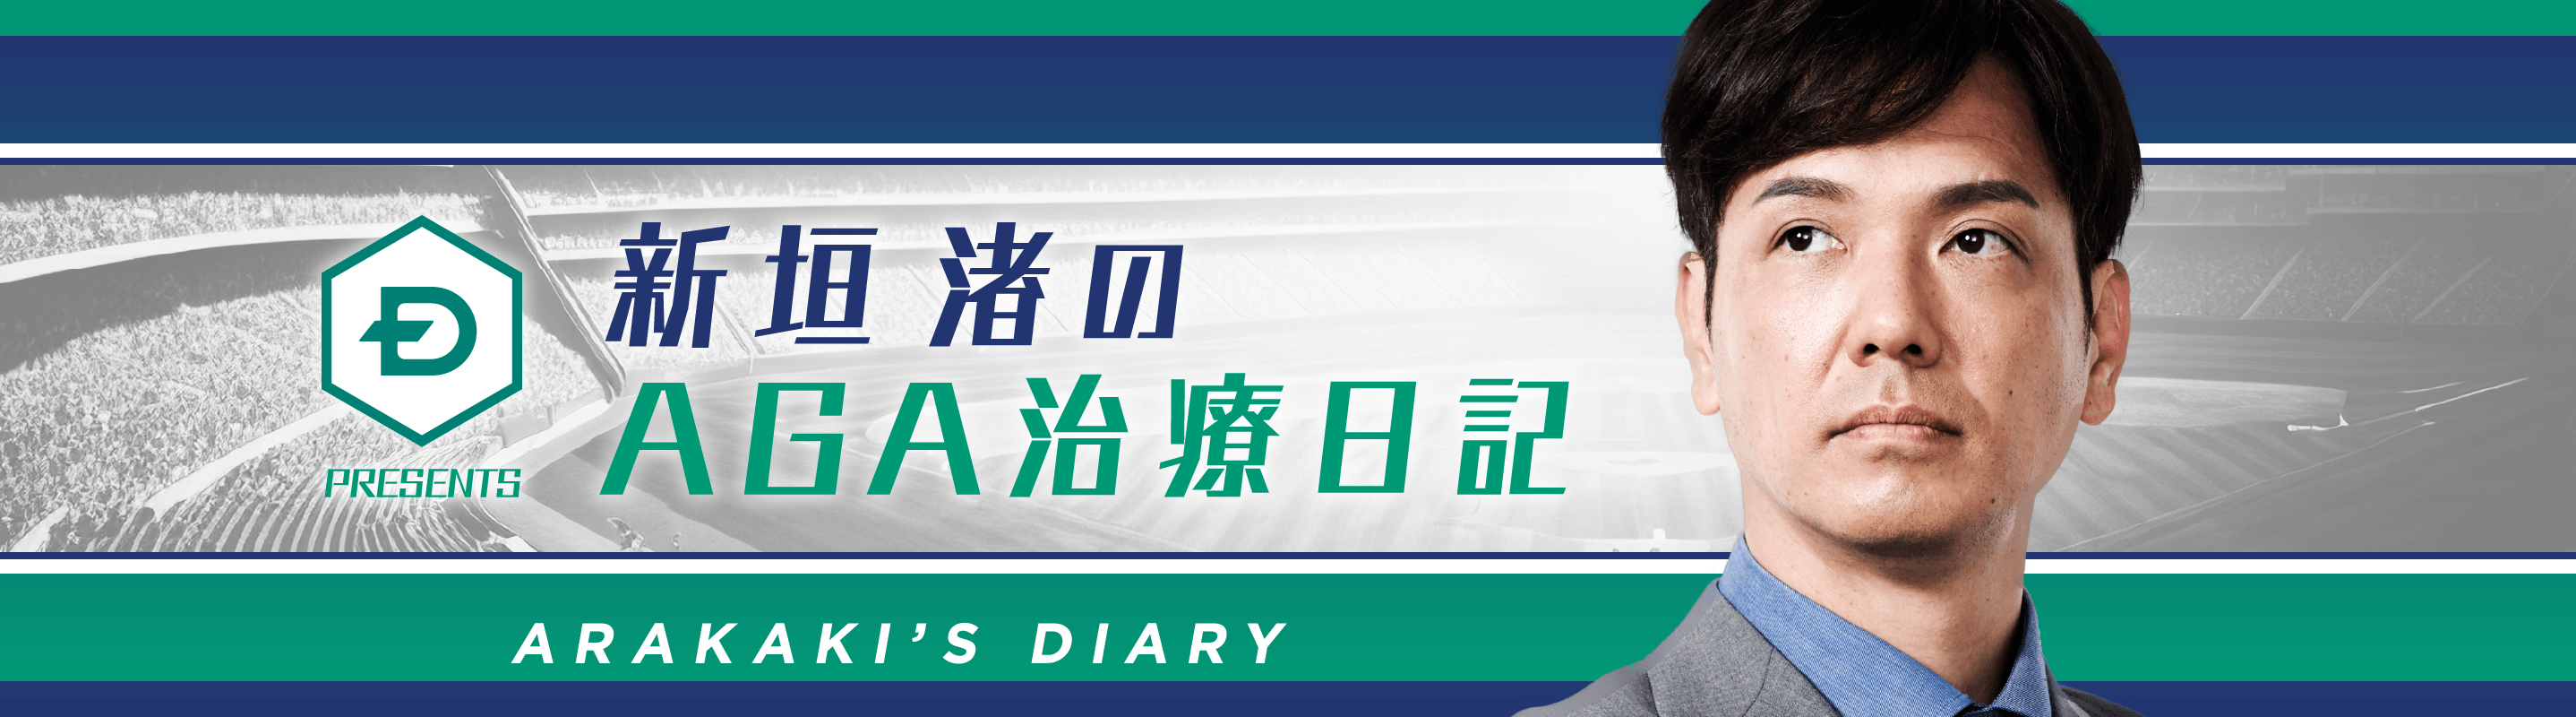 新垣 渚のAGA治療日記 ARAKAKI’S DIARY